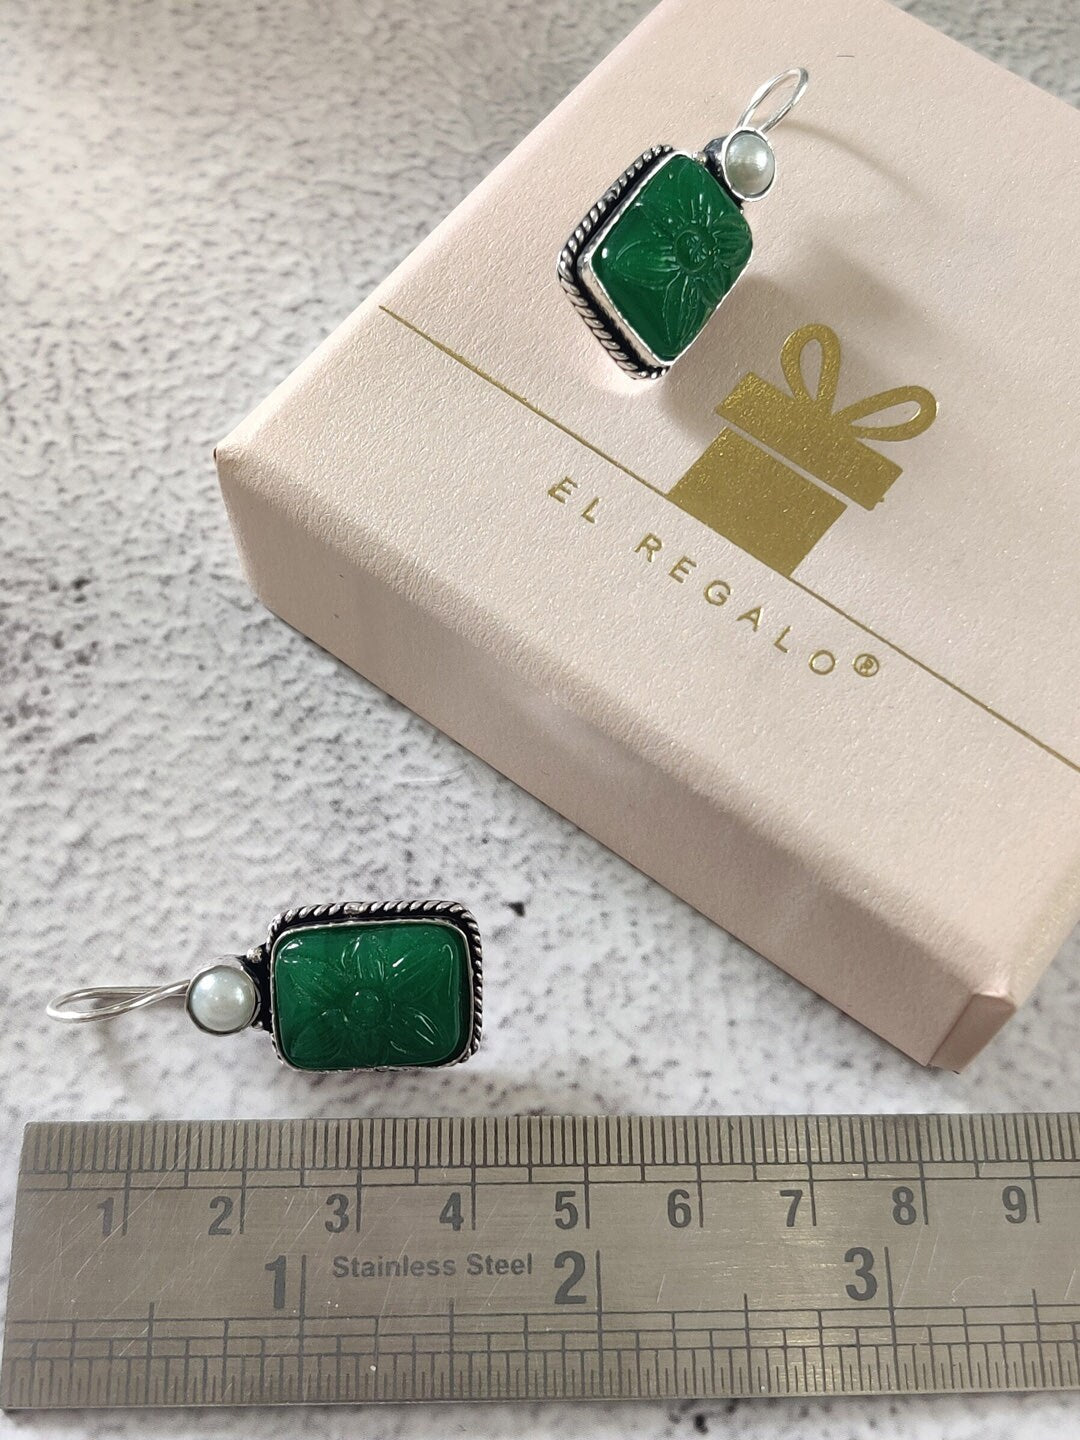 EL REGALO Green Geometric Drop Earrings - for Women and Girls
Style ID: 16851570